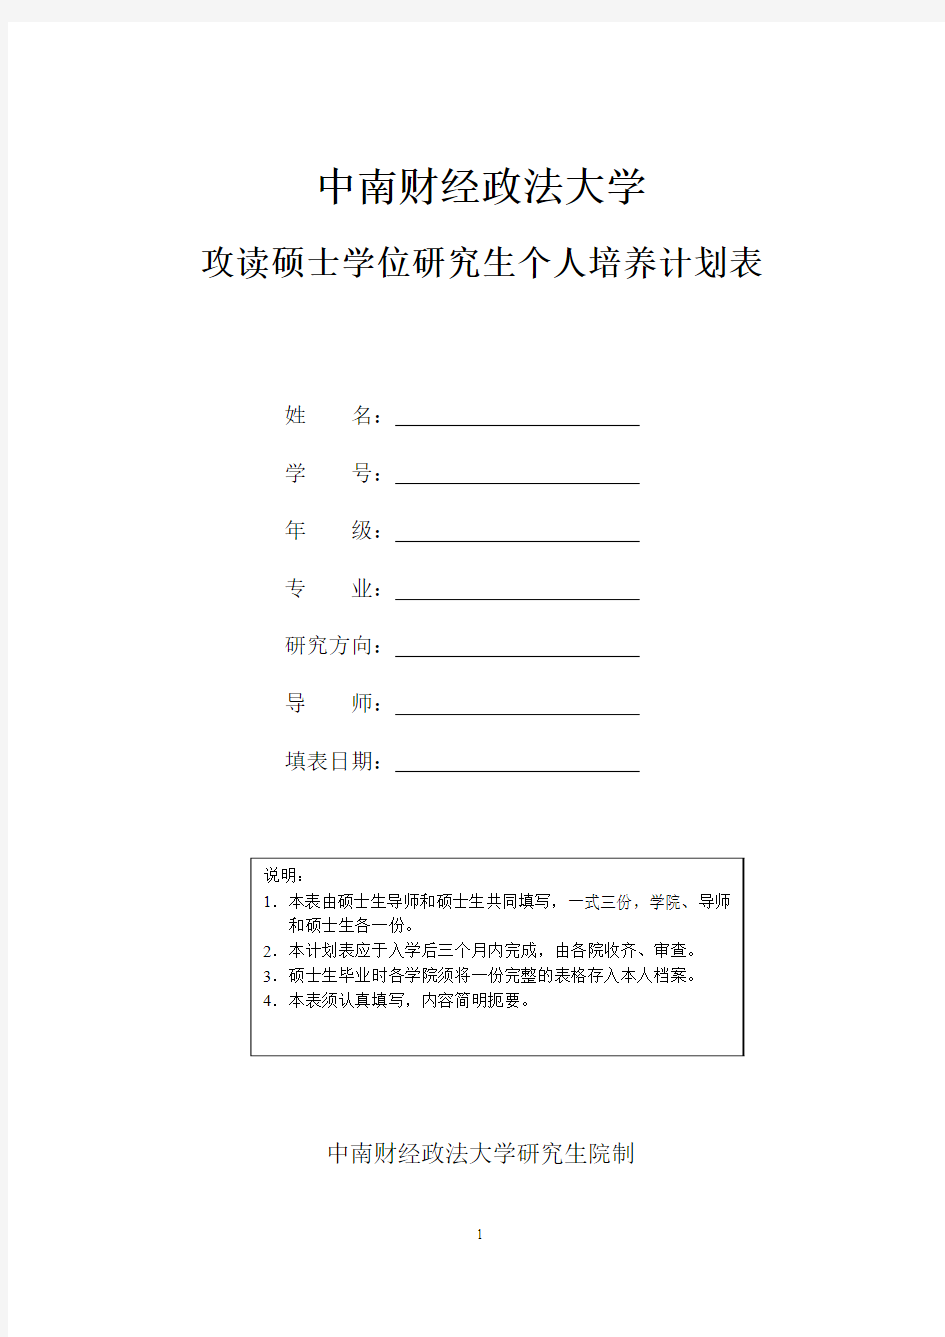 中南财经政法大学培养计划 个人培养计划表